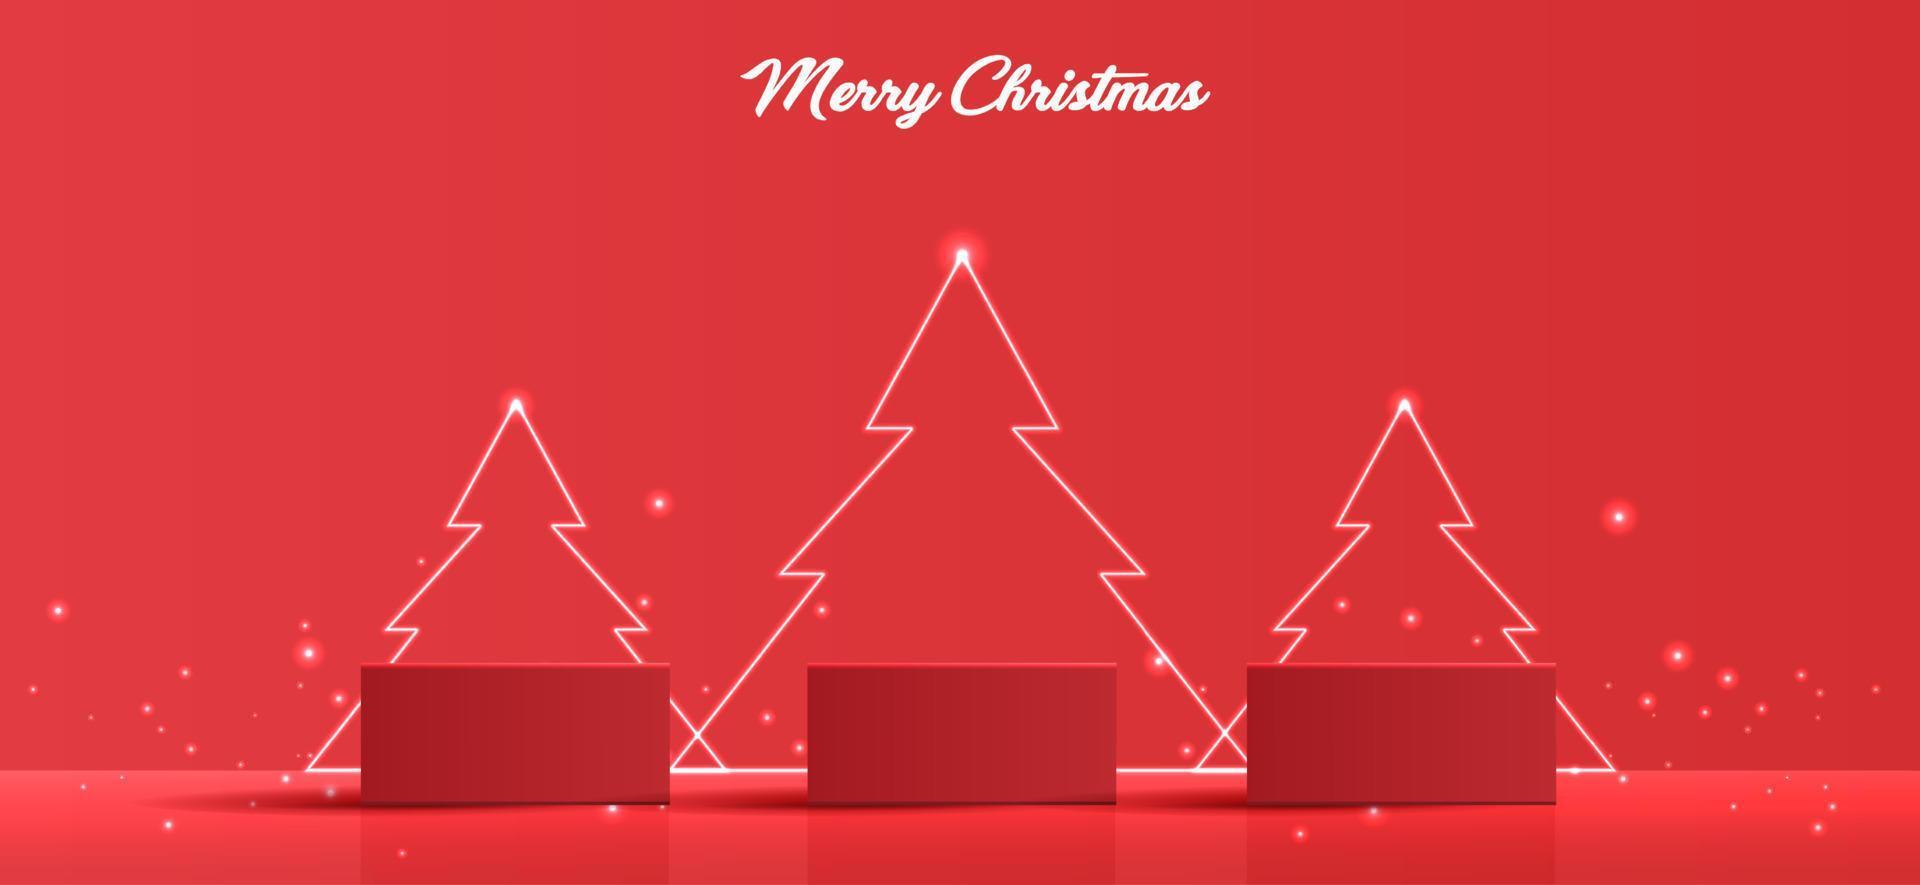 podiumform für die ausstellung von kosmetischen produkten für weihnachten oder neujahr. stehen produktschaufenster auf rotem hintergrund mit baum weihnachten. Vektordesign. vektor